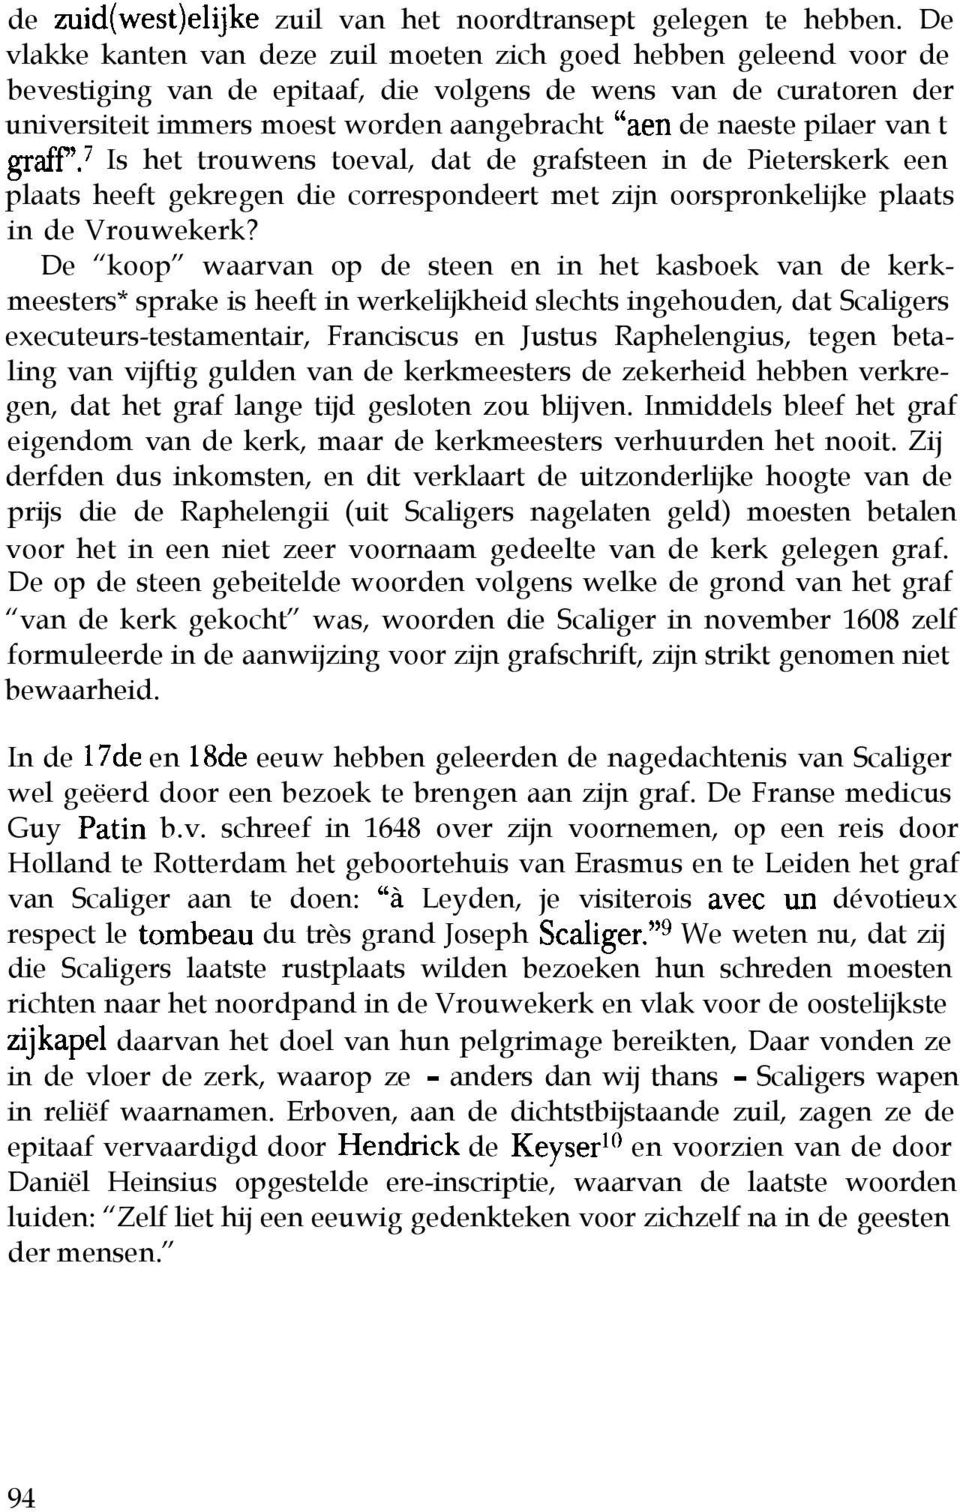 pilaer van t grafy. Is het trouwens toeval, dat de grafsteen in de Pieterskerk een plaats heeft gekregen die correspondeert met zijn oorspronkelijke plaats in de Vrouwekerk?